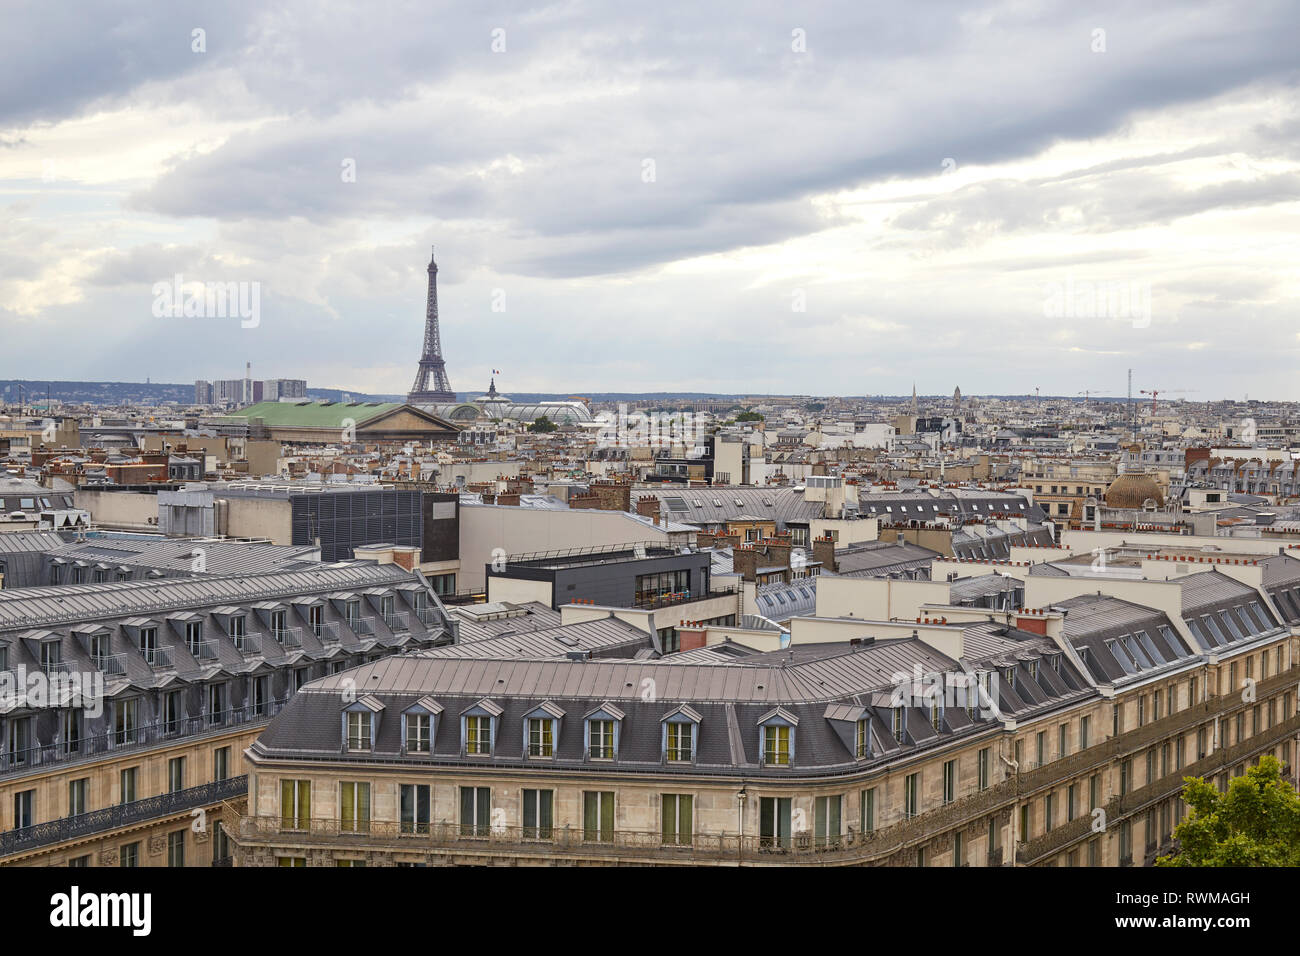 Vue sur les toits de Paris et la Tour Eiffel dans un jour nuageux, horizon en France Banque D'Images